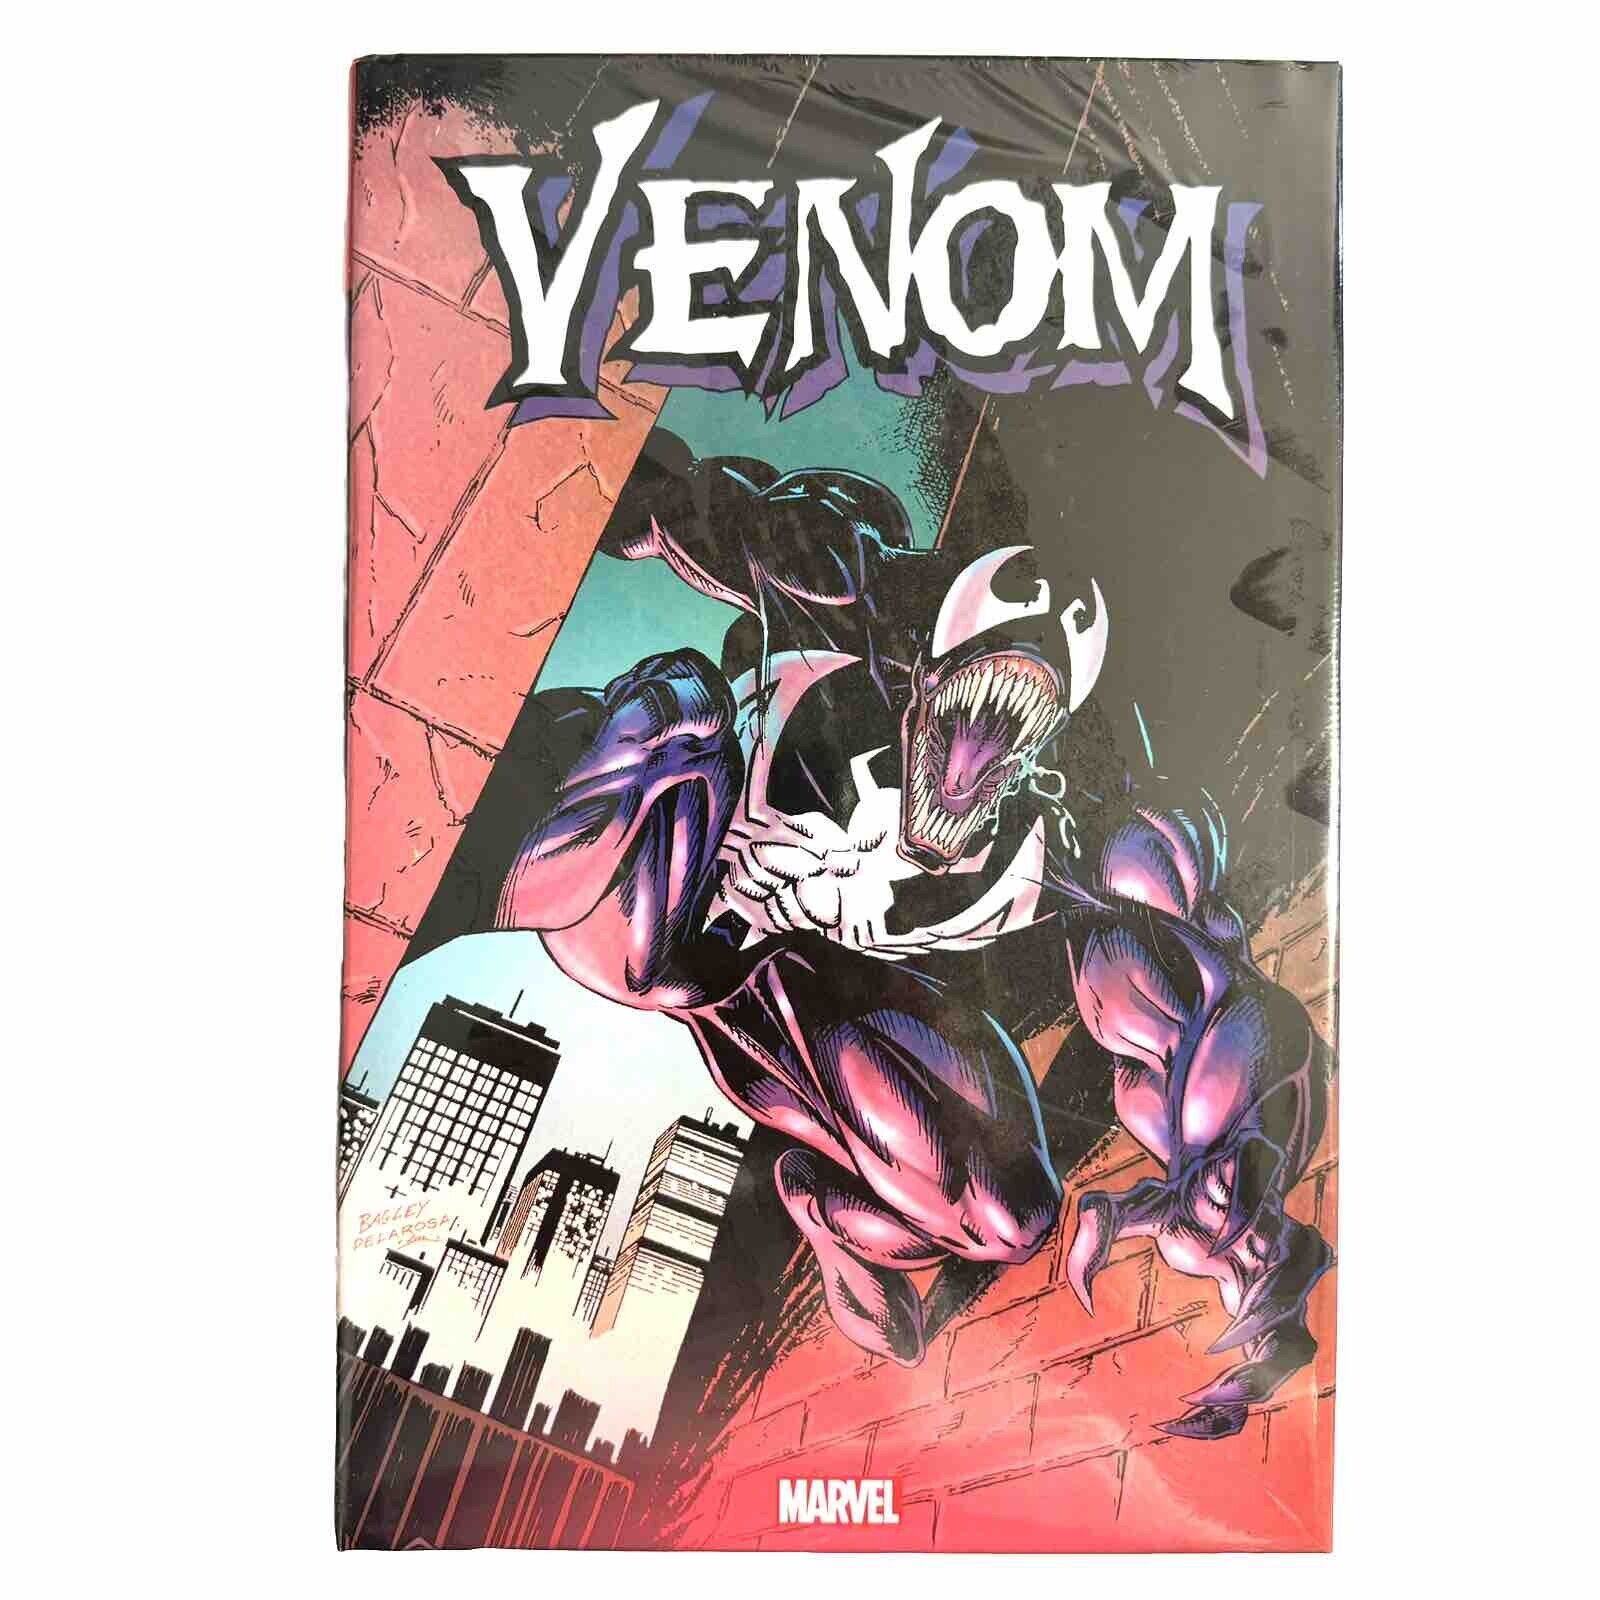 Venom Omnibus Vol 1 Venomnibus New Sealed Hardcover $5 Flat Combined Shipping